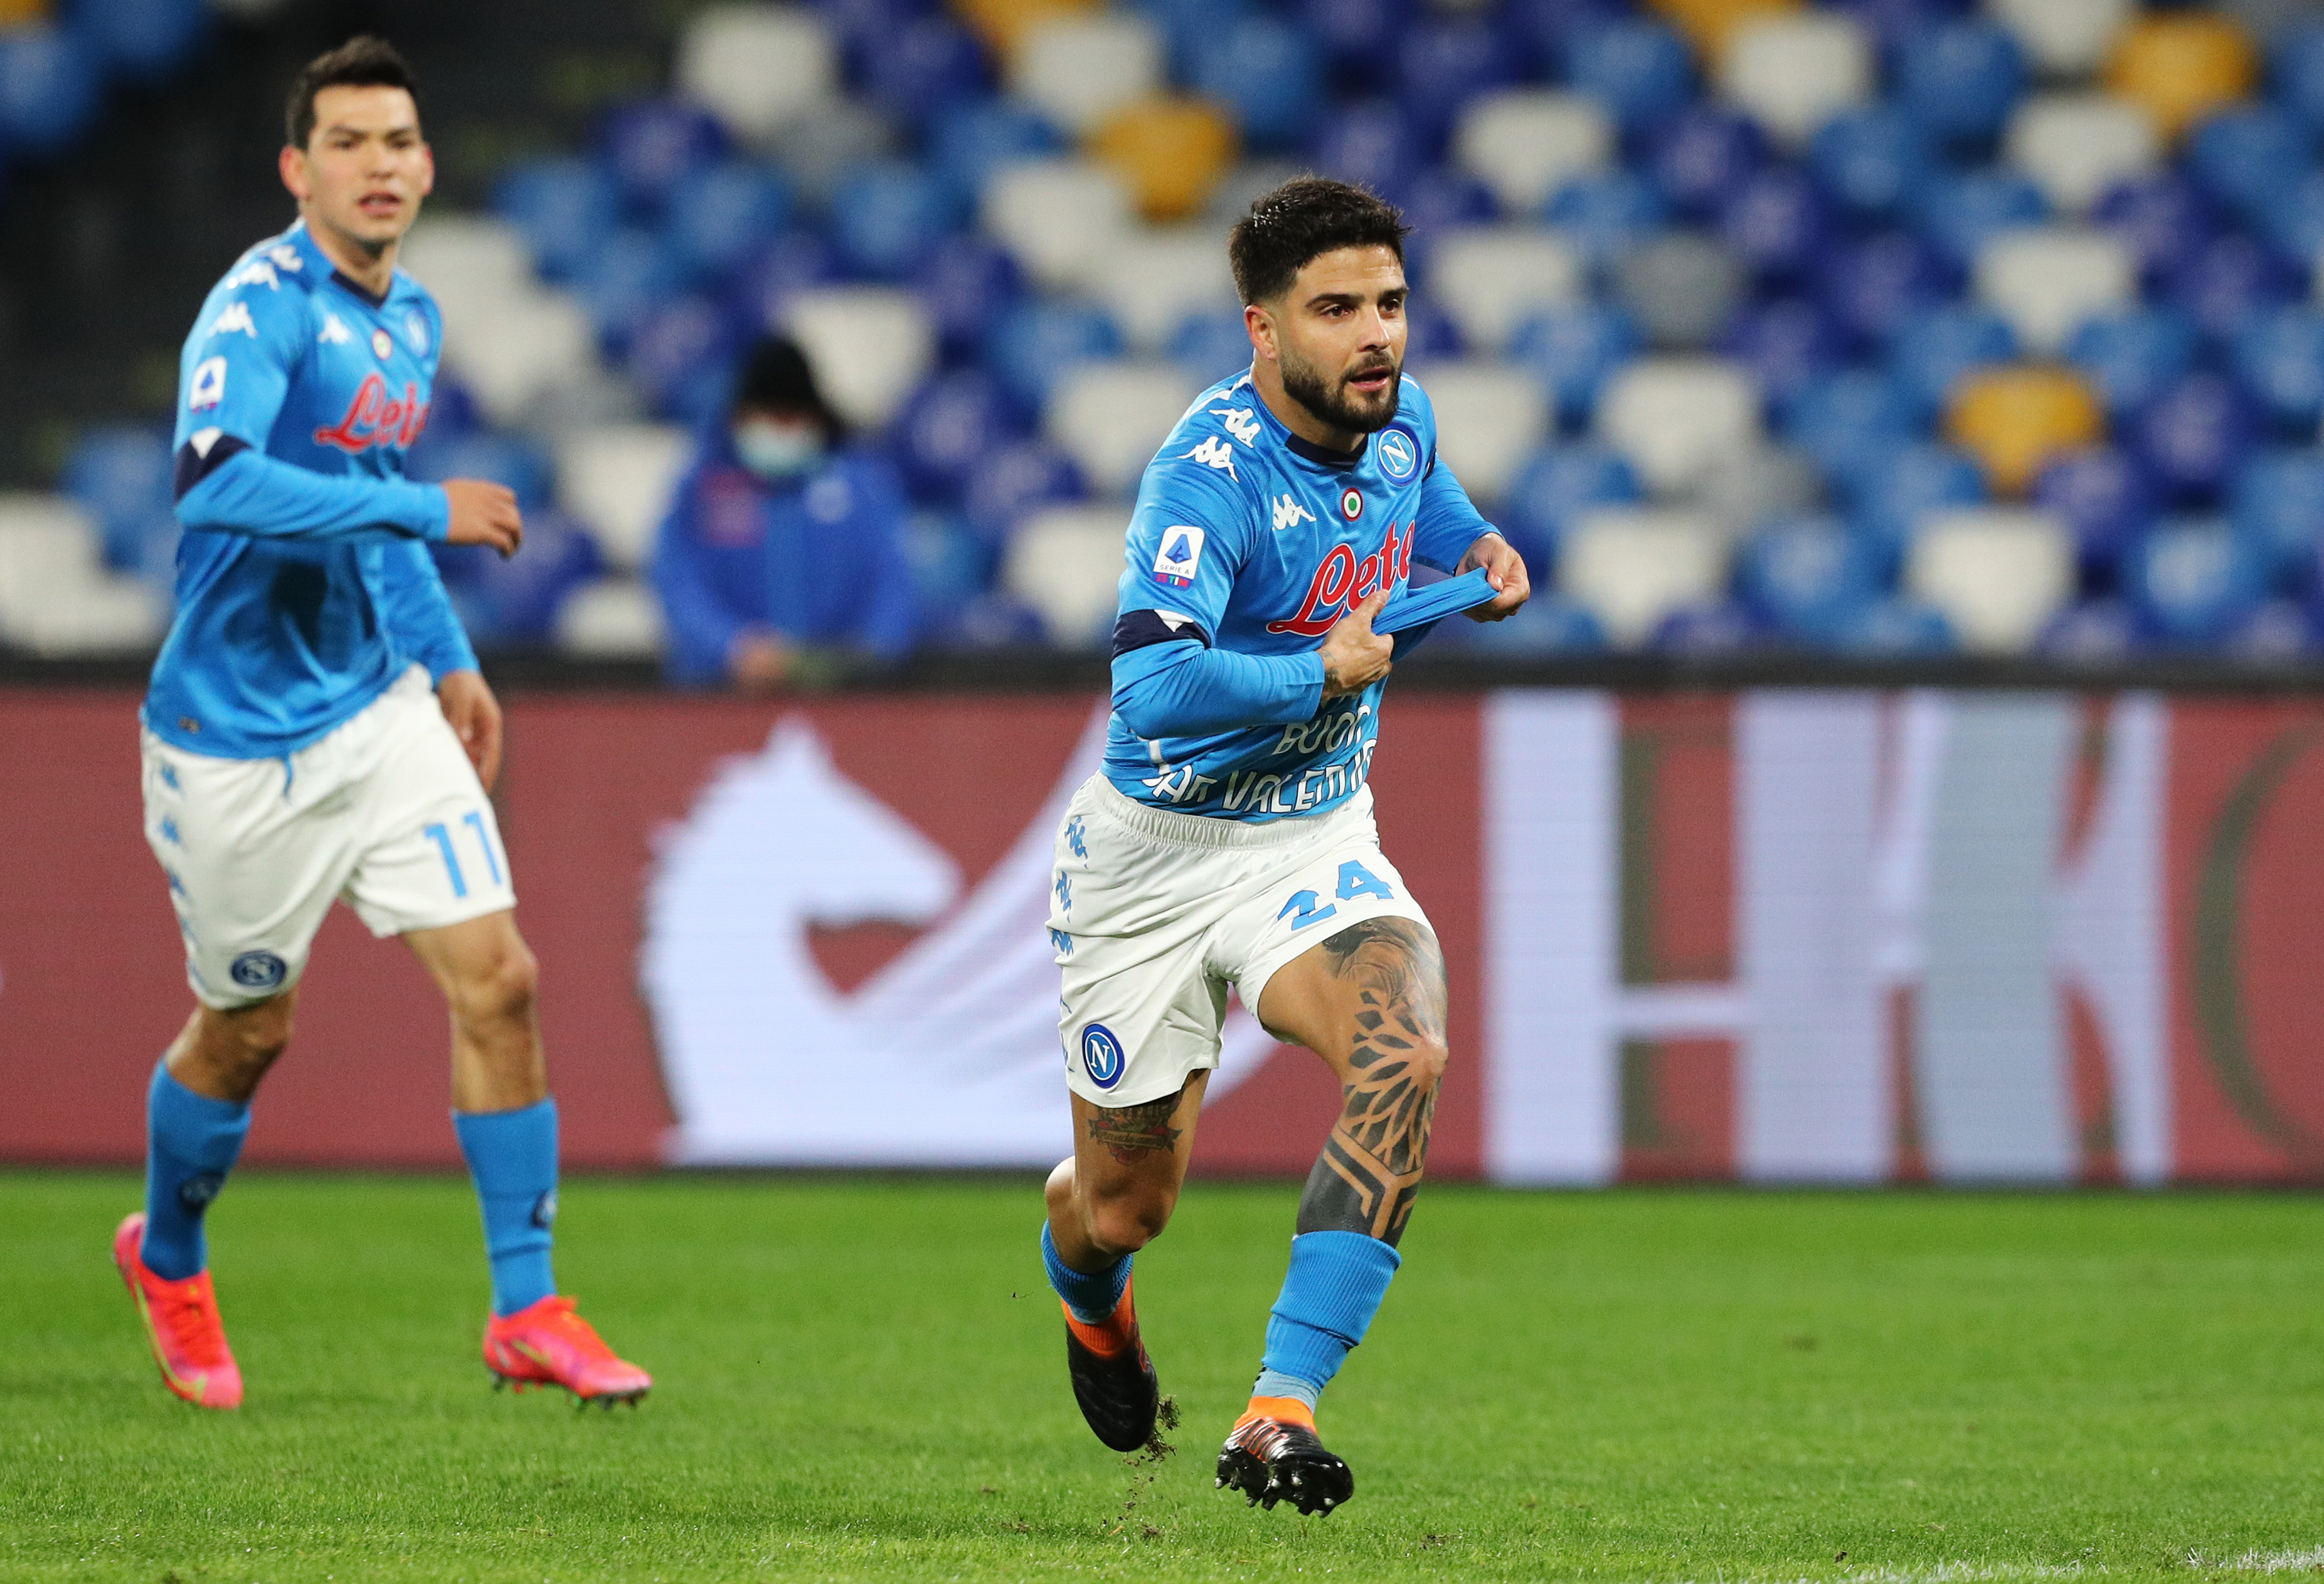 La última vez que se enfrentaron ambos equipos, el Napoli se impuso por la cuenta mínima con un gol de penal de Lorenzo Insigne. (Foto: Getty)